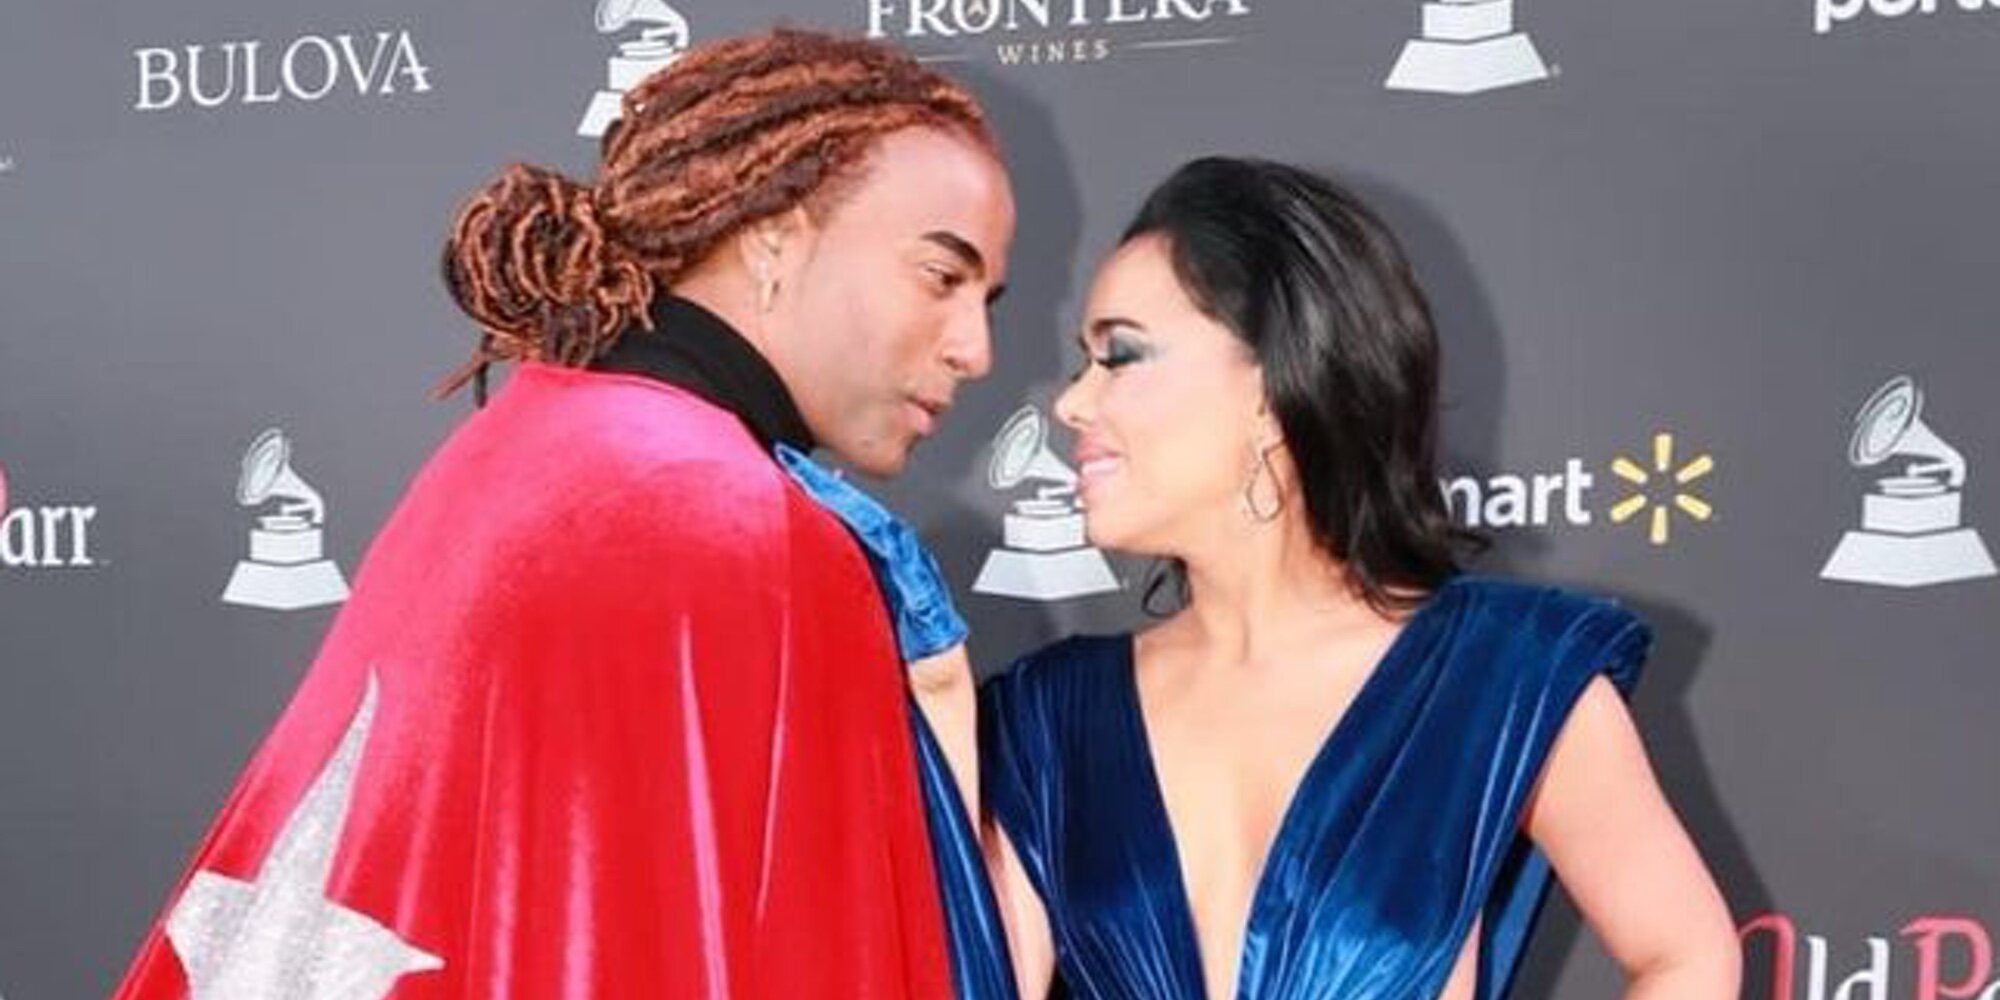 Beatriz Luengo y Yotuel arrasan en los Grammy Latinos con 'Patria y vida', una canción que lucha por Cuba